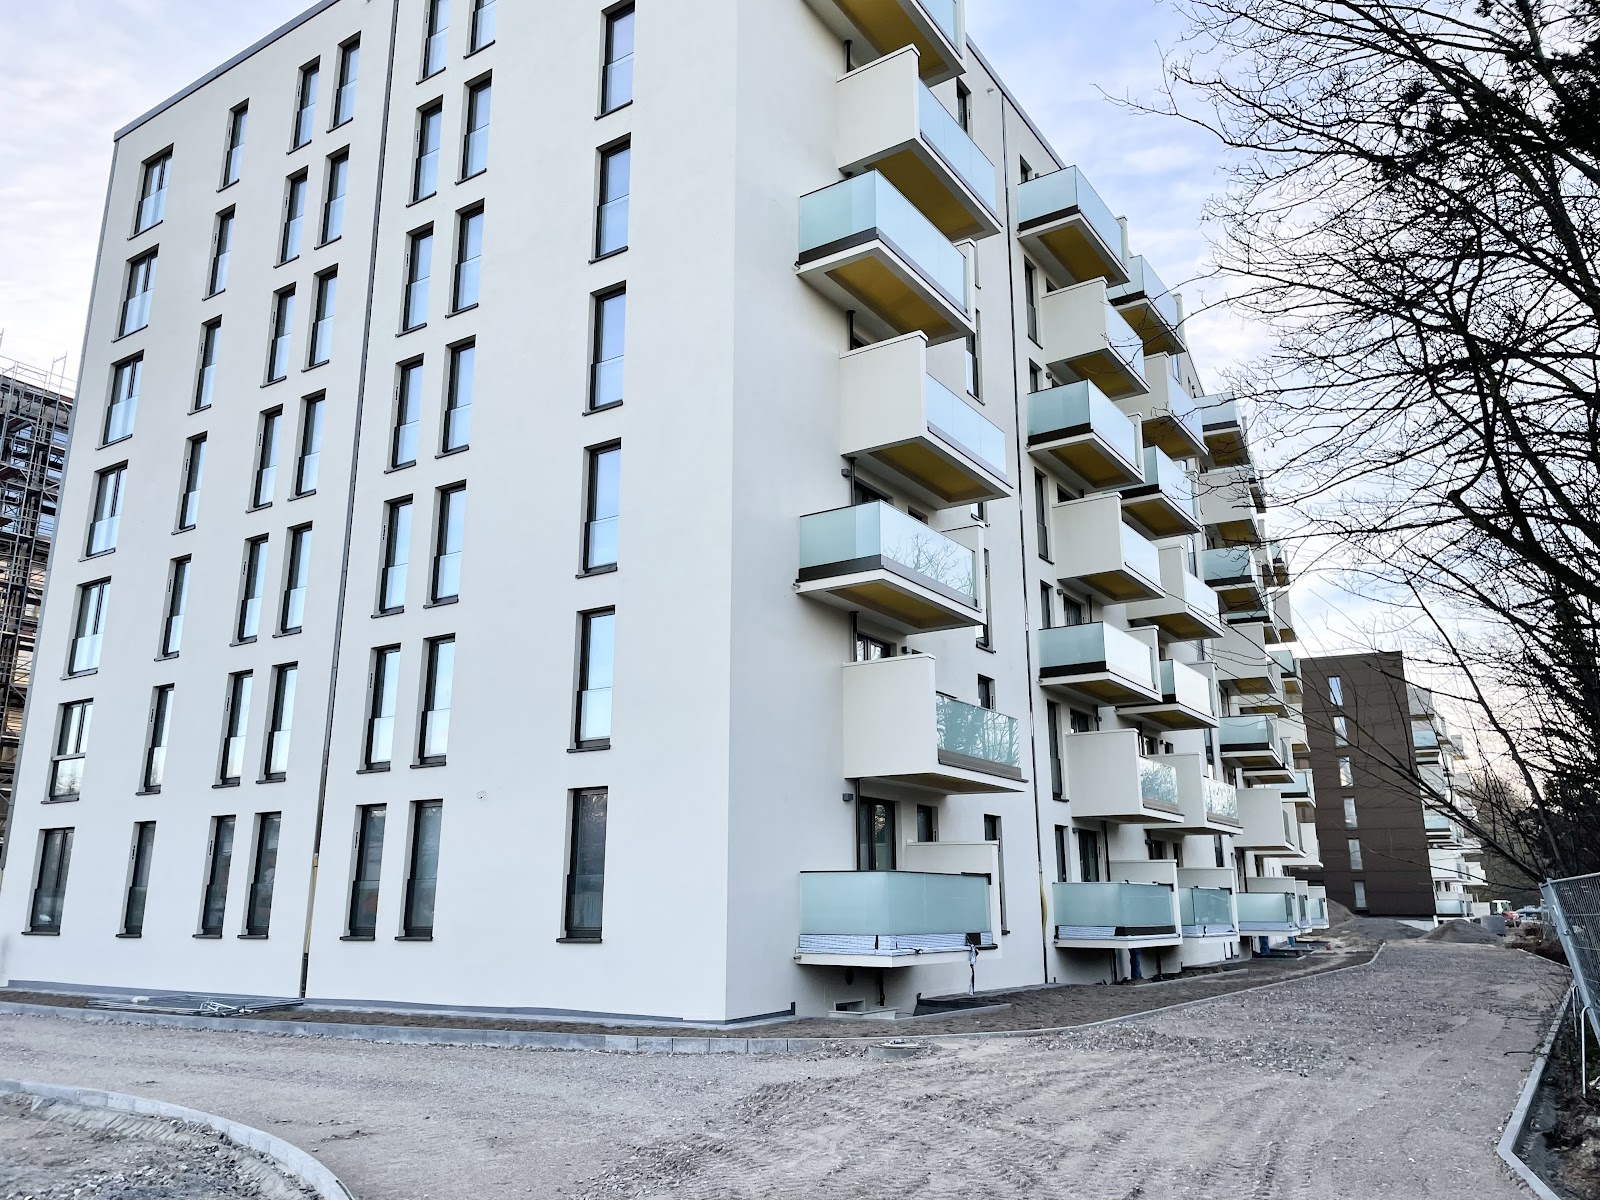 Bild zu Noch zu errichtende 2-Zimmer-Wohnung in Rostock-Lichtenhagen mit Tageslichtbad & Dusche